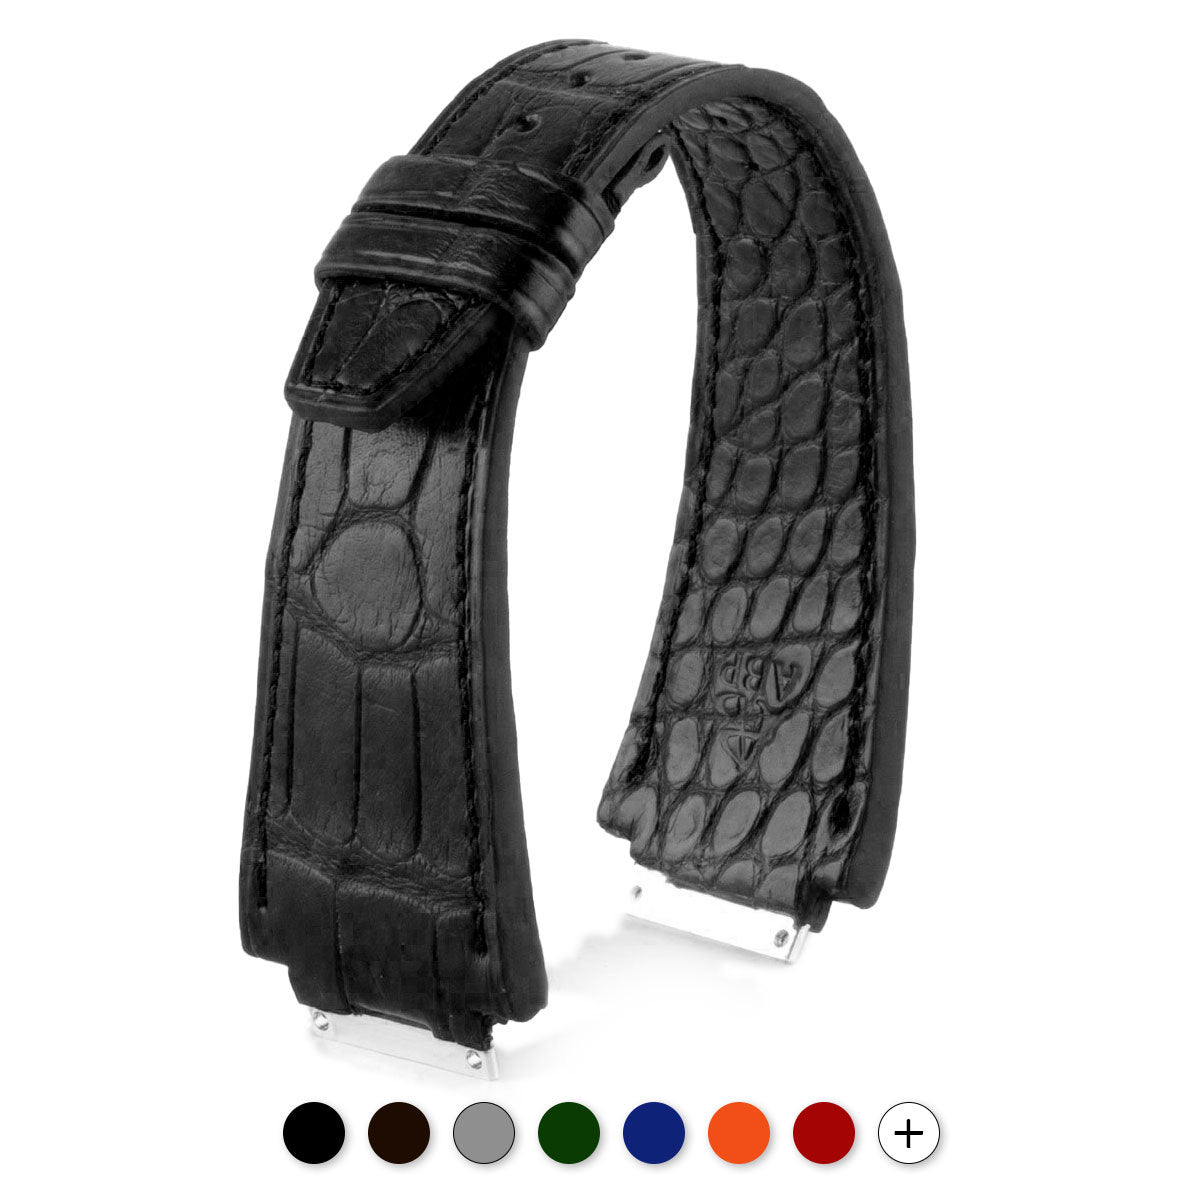 Richard Mille - Bracelet-montre cuir - Alligator ( noir / gris / marron / bleu... ) - watch band leather strap - ABP Concept -